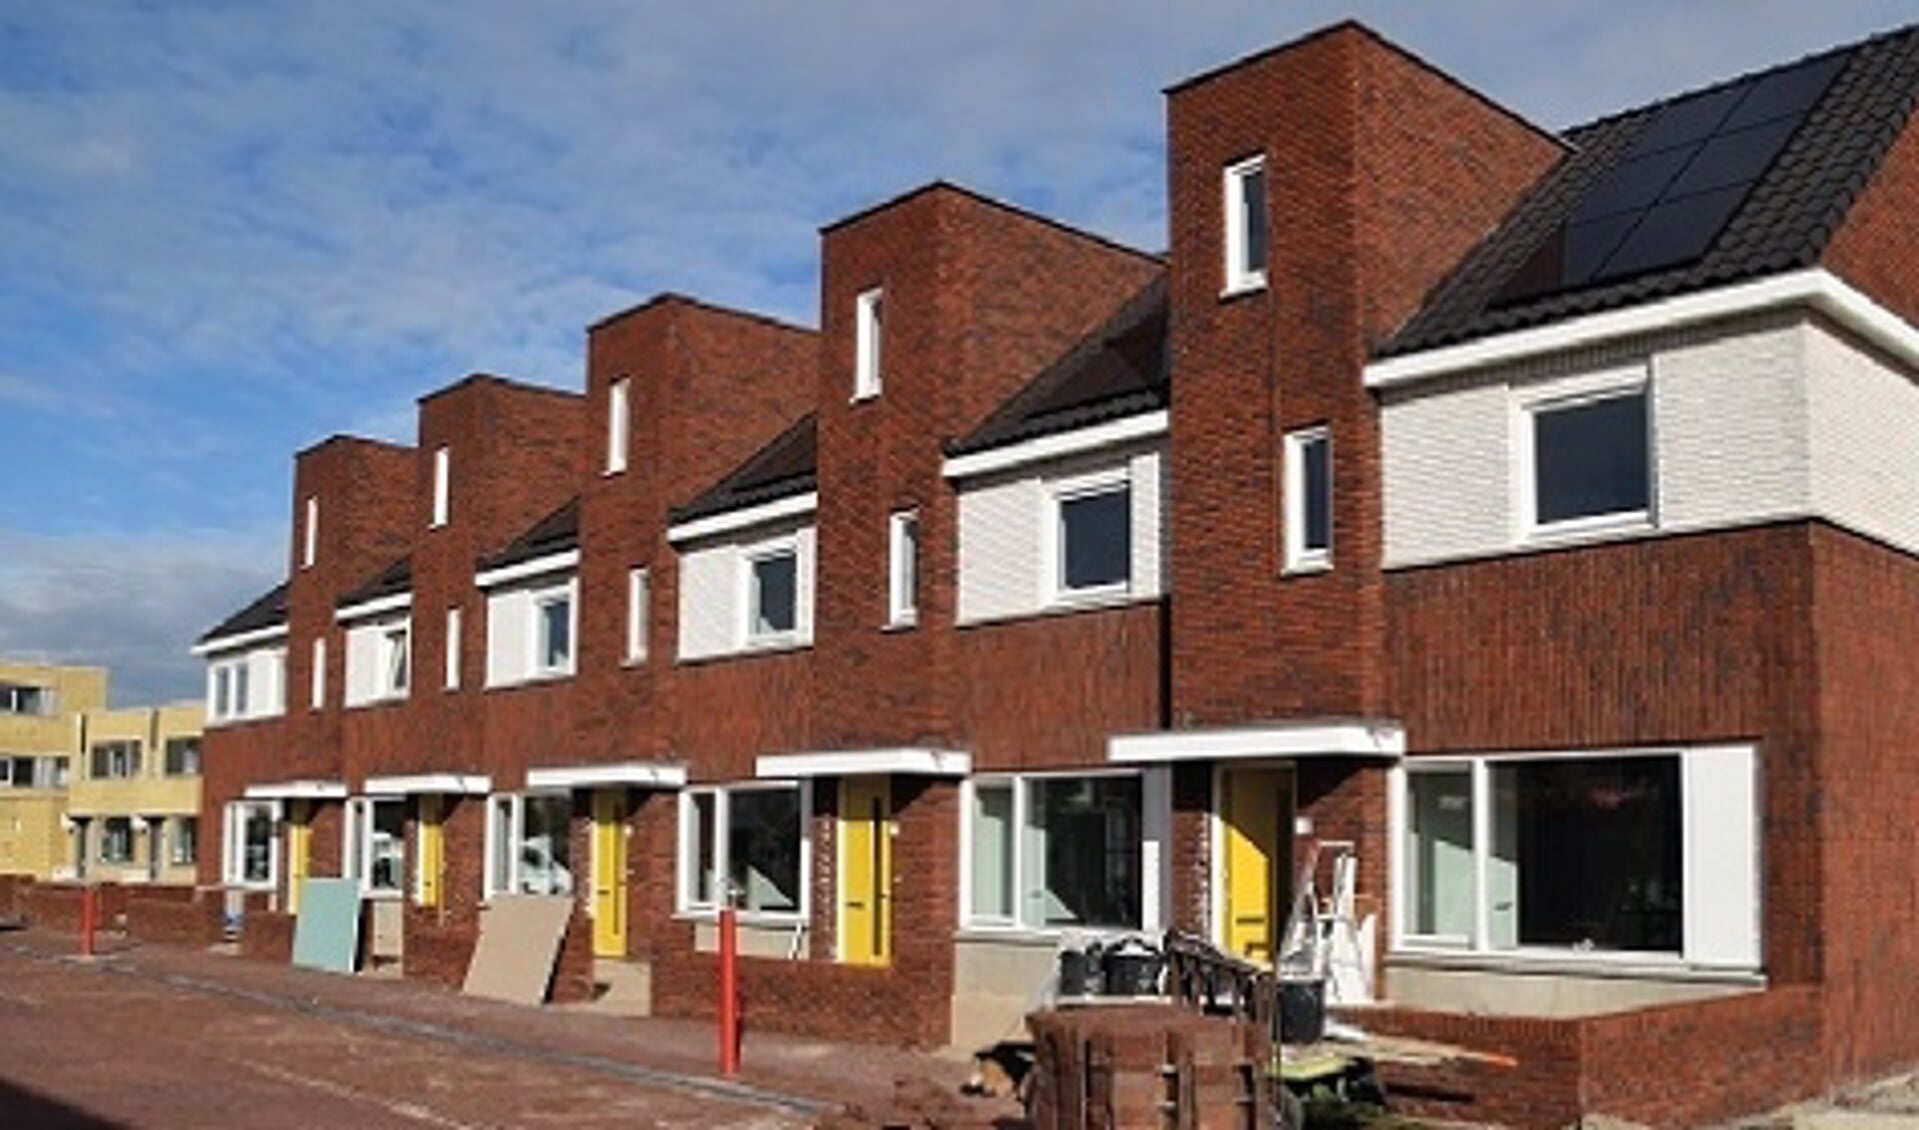 Reguliere huurwoningen in de Friese Vlaak zijn overgedragen aan de nieuwe huurders.